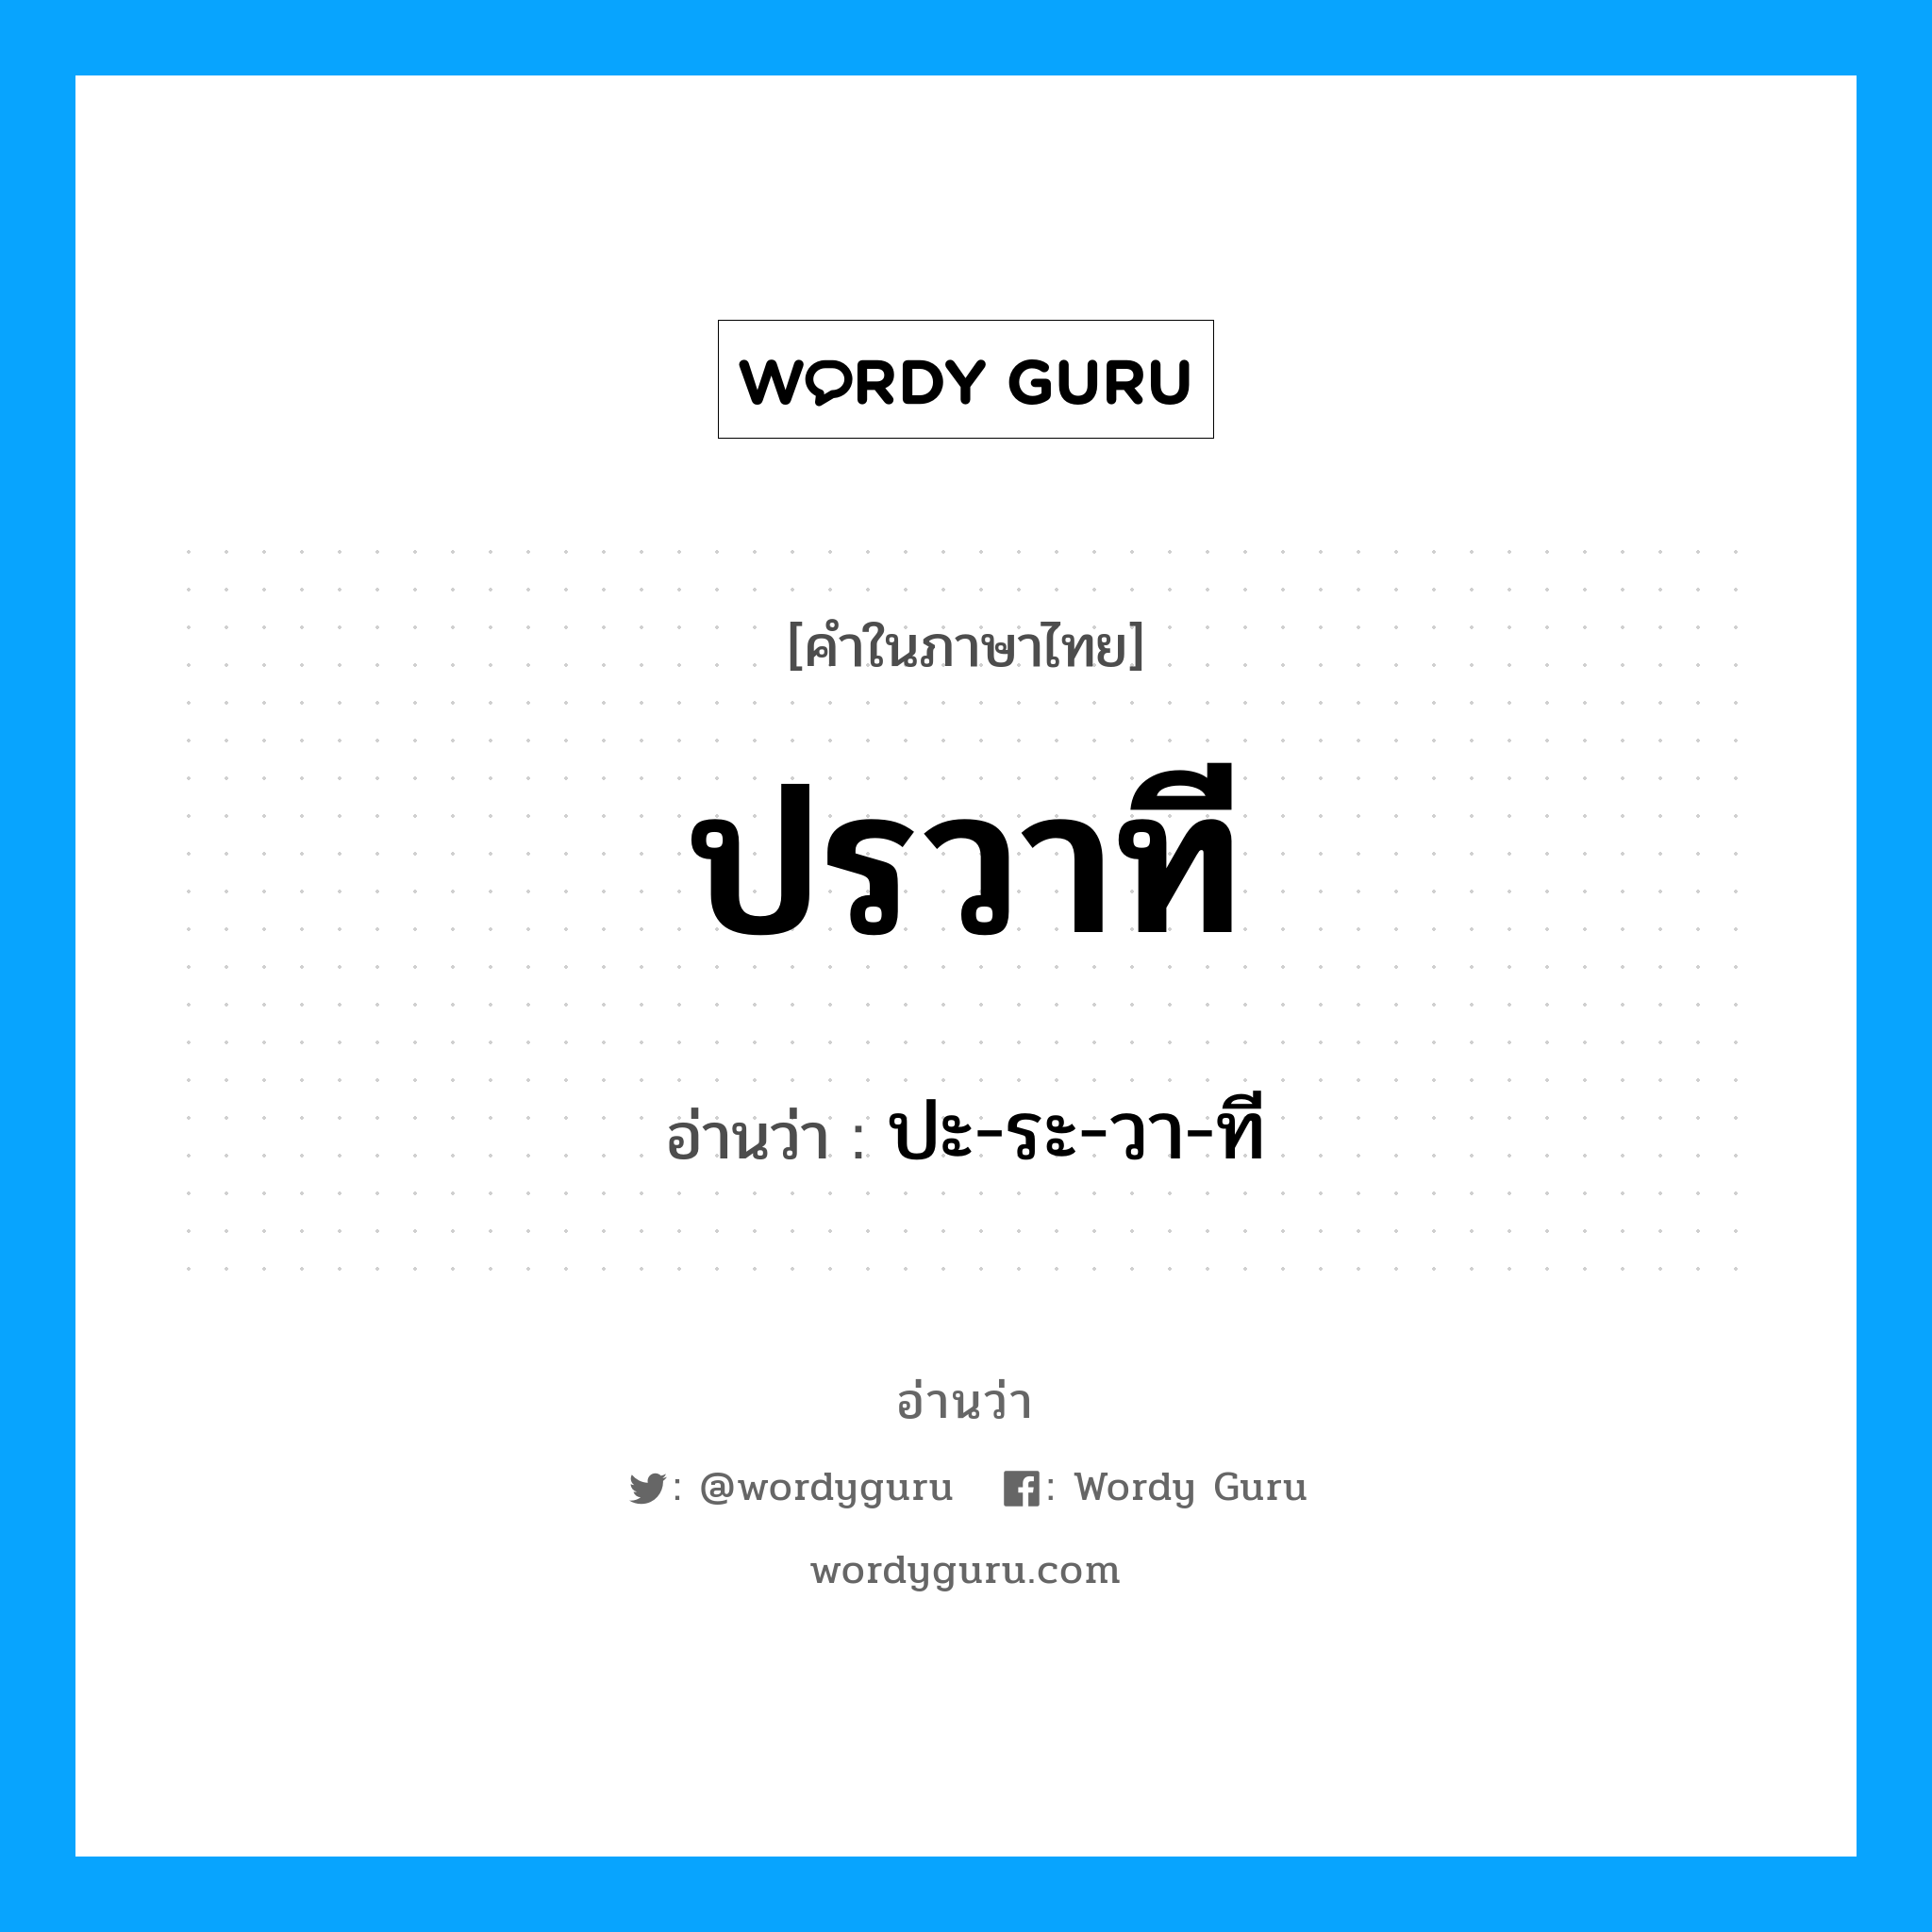 ปะ-ระ-วา-ที เป็นคำอ่านของคำไหน?, คำในภาษาไทย ปะ-ระ-วา-ที อ่านว่า ปรวาที